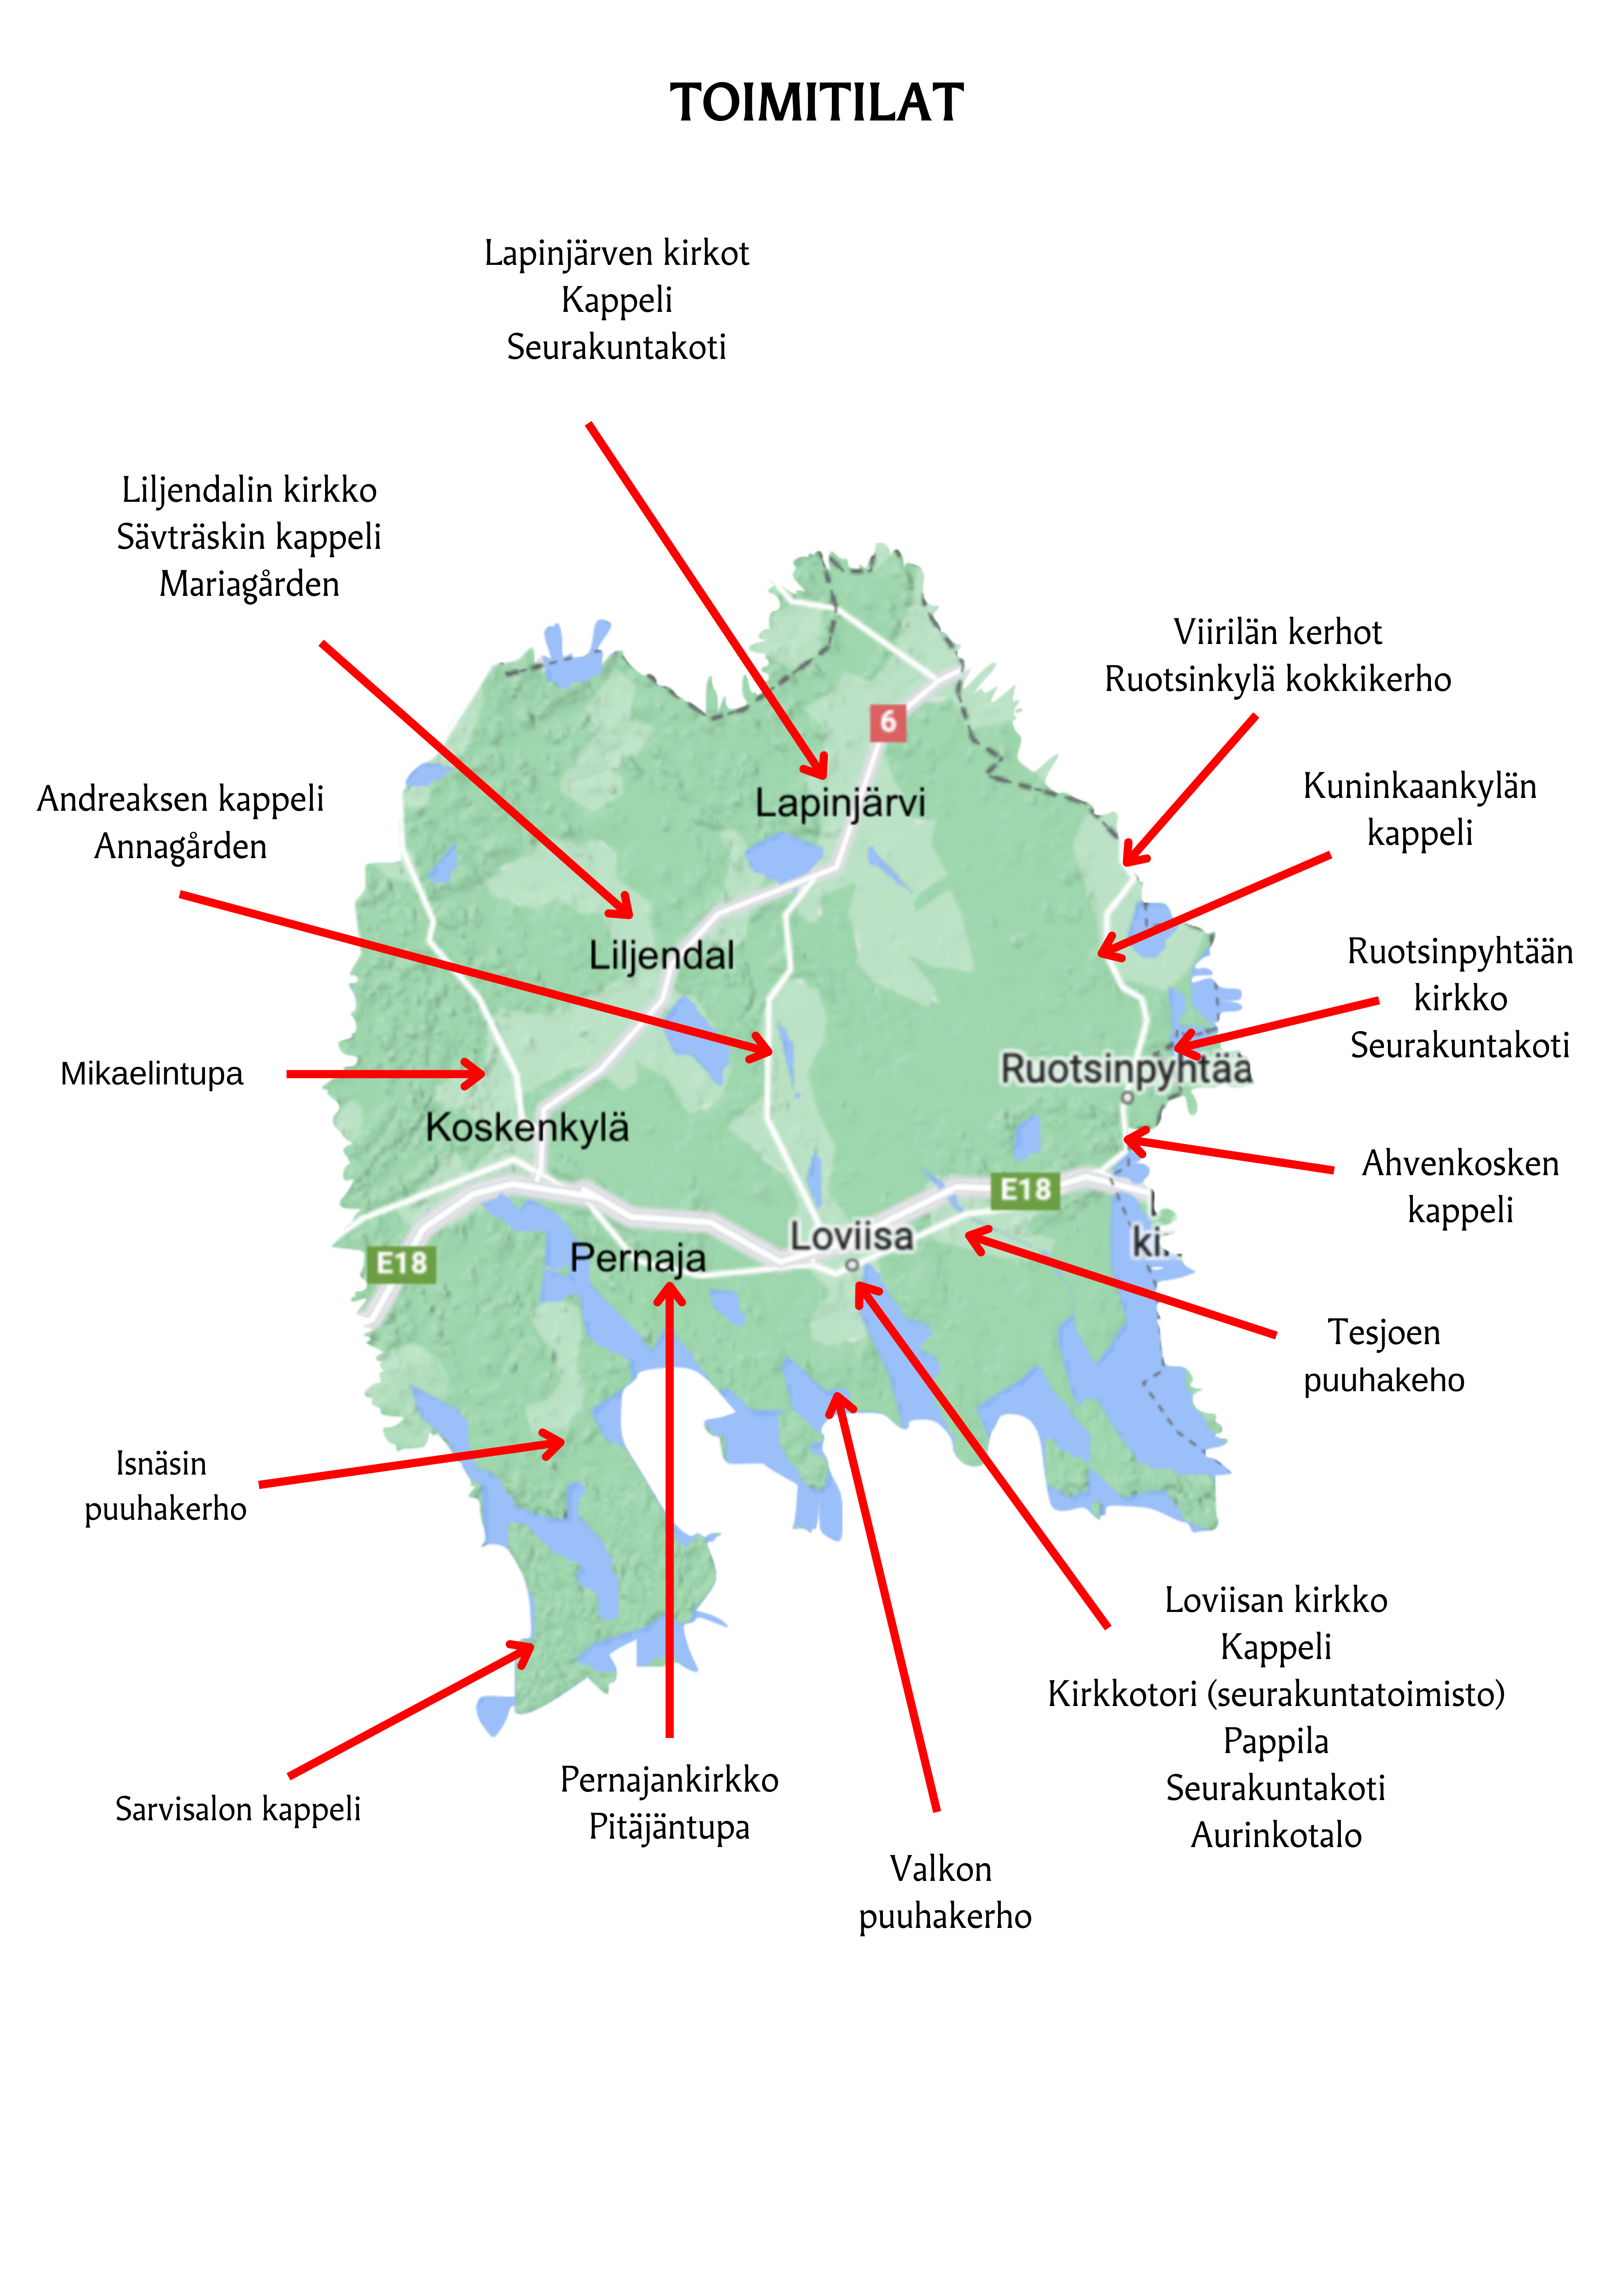 Agricolan suomalainen seurakunta maantieteellisesti